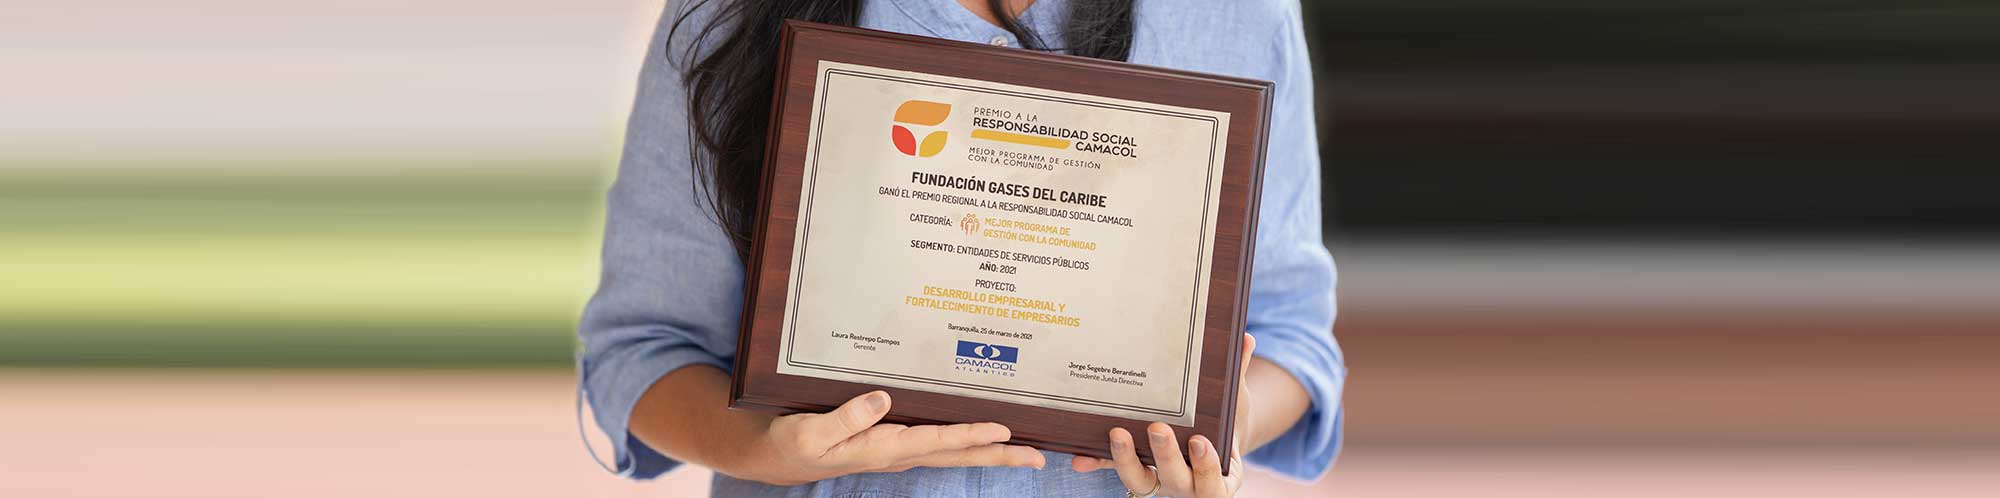 Fundación Gases del Caribe recibe premio a la Responsabilidad Social 2021